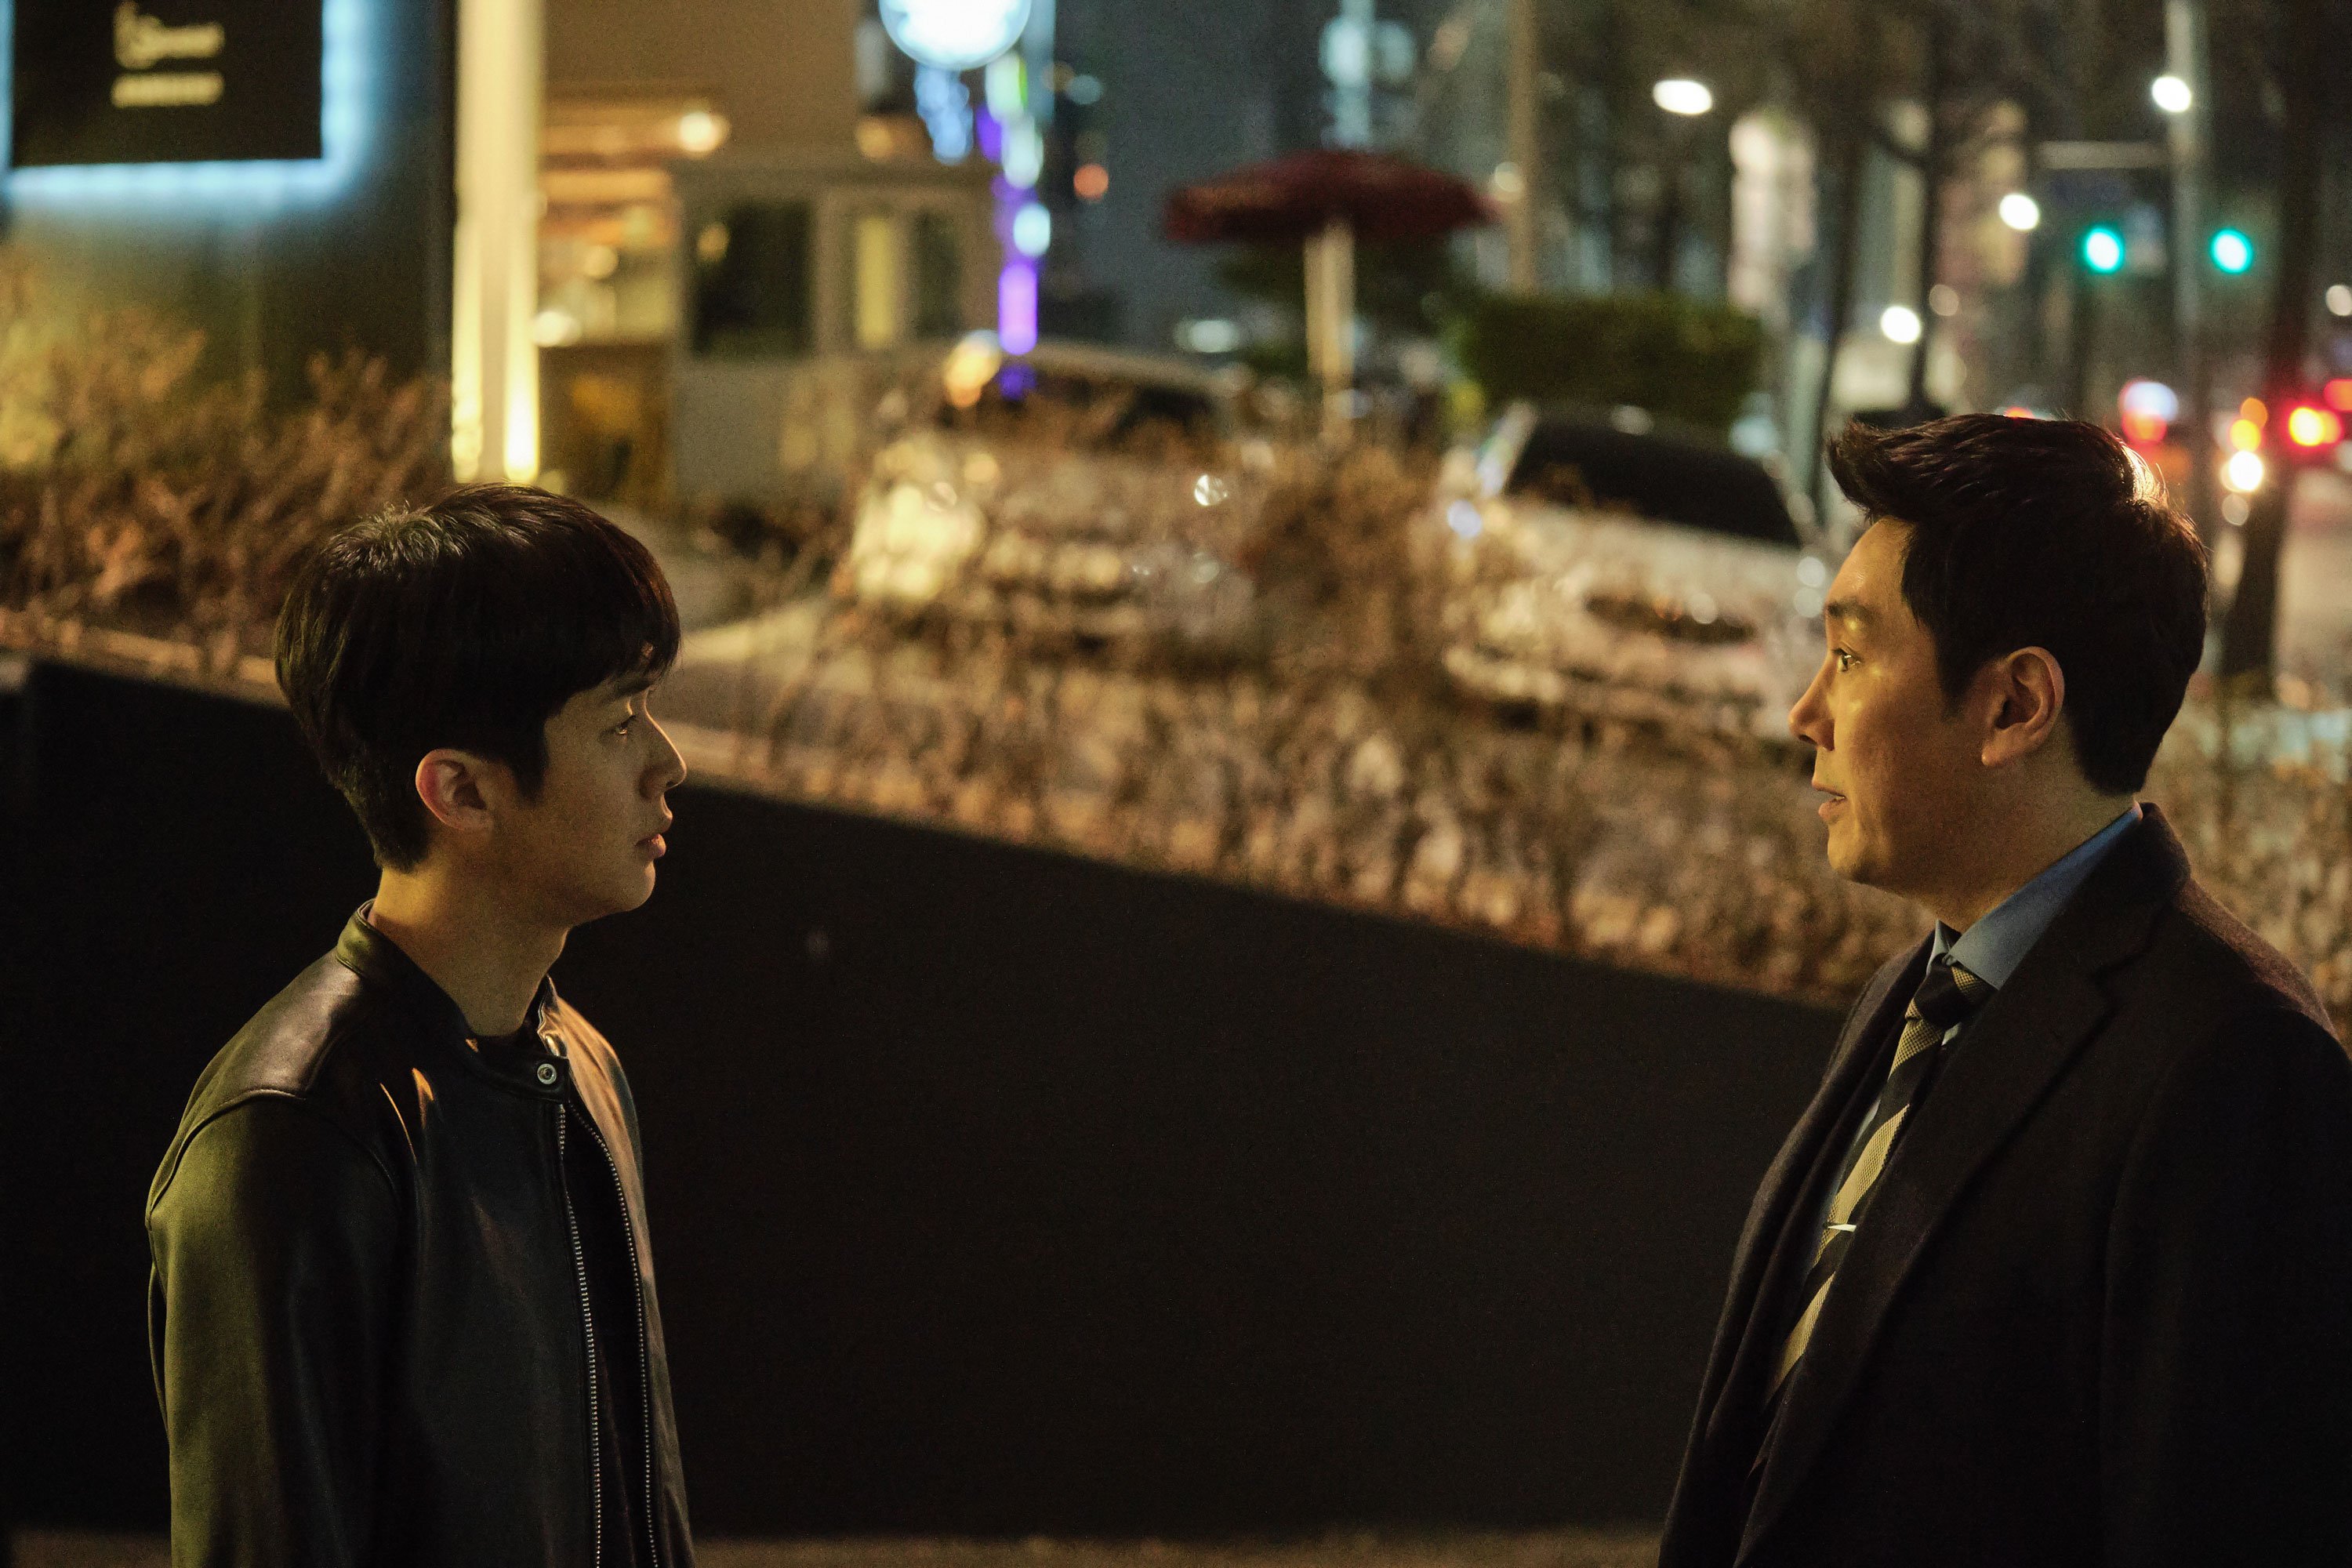 Dựa theo tiểu thuyết Blood of the Policeman do nhà văn Nhật Bản Joh Sasaki chấp bút, Dòng Máu Đặc Cảnh (The Policeman’s Lineage) đã nhanh chóng trở thành tác phẩm điện ảnh ăn khách nhất khi trình chiếu tại quê nhà Hàn Quốc, chấm dứt chuỗi ngày thống trị phòng vé của bom tấn Spider-Man: No Way Home (2021). Quy tụ dàn sao tên tuổi gồm Cho Jin Woong, Choi Woo Shik, Park Hee Soon…, chuyện phim xoay quanh nhân vật Choi Min Jae (Choi Woo Shik), cậu cảnh sát trẻ có niềm tin mãnh liệt vào đạo đức nghề nghiệp. https://www.youtube.com/watch?v=b-nA92Qfi2Q [Trailer Dòng Máu Đặc Cảnh]. Nhờ đức tính này, anh được thanh tra Hwang (Park Hee Soon) bên Bộ Nội Vụ chú ý. Ông cử chàng lính mới sang đơn vị của Park Kang Yoon, điều tra viên cấp cao nổi tiếng nhờ thành tích bắt giữ tội phạm khó ai sánh kịp. Nghi ngờ Park sử dụng nguồn tiền bất chính cho hoạt động phá án, thanh tra Hwang giao Choi Min Jae nhiệm vụ tìm kiếm bằng chứng chứng tỏ gã ta là cớm bẩn. IMG_256 Hình 1: Với bản tính chính trực, chàng cảnh sát Choi được Bộ Nội Vụ giao nhiệm vụ theo dõi điều tra viên Park. Khác hẳn mấy tay cảnh sát xuề xòa, thường xuyên ăn bờ ngủ bụi trên phim Hàn, hai nhân vật chính ở Dòng Máu Đặc Cảnh đảm bảo sẽ làm khán giả thích thú. Vì tính chất công việc chuyên điều tra những kẻ thuộc giới siêu giàu, cặp đôi Park – Choi phải đầu tư cho vẻ ngoài nếu muốn tiếp cận, thu thập thông tin về chúng. Bởi vậy, cả hai luôn xuất hiện trong bộ dạng lịch lãm, lái xe sang cũng như liên tục lui tới các tụ điểm giải trí hào nhoáng. Chưa kể, với phương châm “mọi hoạt động phục vụ việc bắt giữ tội phạm đều hợp pháp”, điều tra viên họ Park chẳng ngại lách luật, sử dụng cách thức không tưởng để tóm gọn nghi can. IMG_257 Hình 2: Phim mang đến hình tượng rất thú vị về người cảnh sát chuyên bắt tội phạm hệ “con nhà giàu”. Giống bao tác phẩm cùng chung chủ đề, đứa con tinh thần do đạo diễn Lee Kyu Man cầm trịch không thiếu yếu tố hành động, đuổi bắt tội phạm gay cấn, hay những kế hoạch đánh án thuyết phục. Tuy vậy, cú lật kèo được tổ biên kịch cài cắm kỹ lưỡng sẽ đưa chúng ta đi từ bất ngờ này sang ngạc nhiên khác, bởi lẽ nó rất mới lạ, liên hệ với rất nhiều nhân vật và góp phần thay đổi hoàn toàn cục diện cuối phim. IMG_258 Hình 3: Tác phẩm cũng cho thấy sự chia rẽ sâu sắc về quan điểm trong nội bộ cảnh sát Hàn Quốc. Không khai thác nỗi sợ bị bại lộ danh tính của các đặc vụ nằm vùng, chính không khí căng thẳng, ngột ngạt trong Dòng Máu Đặc Cảnh là nơi bắt nguồn từ sự dằn vặt, tự vấn bản thân nơi chàng lính mới khi đào bới quá khứ, đời tư cấp trên. Với diễn biến ngày càng gay cấn, bộ phim đặt nam chính lẫn người xem vào không ít tình thế éo le. Đứng giữa lằn ranh thiện ác mong manh, Choi Min Jae buộc phải lựa chọn hoặc đứng về phía thanh tra Hwang – gìn giữ phẩm giá liêm khiết, chính trực dù điều đó có khiến mình để lọt kẻ xấu; hoặc chấp nhận “nhúng chàm” như điều tra viên họ Park nhằm thực thi công lý đến cùng. IMG_259 Hình 4: Tài tử Choi Woo Shik có màn lột xác đáng nhớ ở Dòng Máu Đặc Cảnh. Thoát khỏi hình tượng ngây ngô, vụng về, ngôi sao phim Ký Sinh Trùng Choi Woo Shik có màn lột xác đáng nhớ tại Dòng Máu Đặc Cảnh. Hóa thân thành cậu thanh niên ương ngạnh, anh đã lột tả trọn vẹn tâm trạng day dứt, hoang mang ở một cảnh sát trẻ lần đầu bước vào “vùng xám” của cuộc chiến phòng chống tội phạm, nơi mà lòng tin lẫn lập trường bị thử thách dữ dội. Tiếp tục giữ vững phong độ, “cảnh sát quốc dân” Cho Jin Woong không làm khán giả thất vọng trước vai diễn mới Park Kang Yoon. Mặc dù sở hữu phong cách điều tra “lách luật” chẳng giống ai, nhân vật này vẫn giành được thiện cảm nhờ thái độ lạnh lùng, quyết đoán lúc phá án nhưng lại thân thiện, gần gũi và coi trọng anh em cấp dưới. IMG_260 Hình 5: Nhân vật điều tra viên nửa chính nửa tà Park để lại nhiều ấn tượng cho người xem. Nhìn chung, Dòng Máu Đặc Cảnh đã mang tới làn gió thú vị cho thể loại hình sự, tâm lý tội phạm. Không mặc định bên nào đúng sai, phim để chúng ta tự đưa ra câu trả lời phù hợp cho chính bản thân mình. Nếu ưa thích những tác phẩm chứa đựng nút thắt bất ngờ và đào sâu vào tâm lý nhân vật, đứa con tinh thần của đạo diễn Lee Kyu Man là lựa chọn phù hợp tại thời điểm hiện nay. Dòng Máu Đặc Cảnh (The Policeman’s Lineage) khởi chiếu tại các hệ thống rạp trên toàn quốc từ ngày 25/02/2022. THE POLICEMAN’S LINEAGE - DÒNG MÁU ĐẶC CẢNH - Đạo diễn: Lee Kyu Man - Diễn viên: Cho Jin Woong, Choi Woo Shik, Park Hee Soon... - Thể loại: Tâm lý tội phạm, hành động - Nội dung: Để đổi lấy tập tài liệu mật về người cha đã khuất, chàng cảnh sát trẻ Choi Min Jae mạo hiểm tham gia vào chuyên án hòng “lật tẩy” tay đội trưởng điều tra khét tiếng Park Kang Yoon. Trước những tên tội phạm mưu mô, lòng chính trực của một cảnh sát mới vào nghề hay sự lão luyện, quyết liệt bất chấp ranh giới của đội trưởng Kang sẽ lên tiếng. 